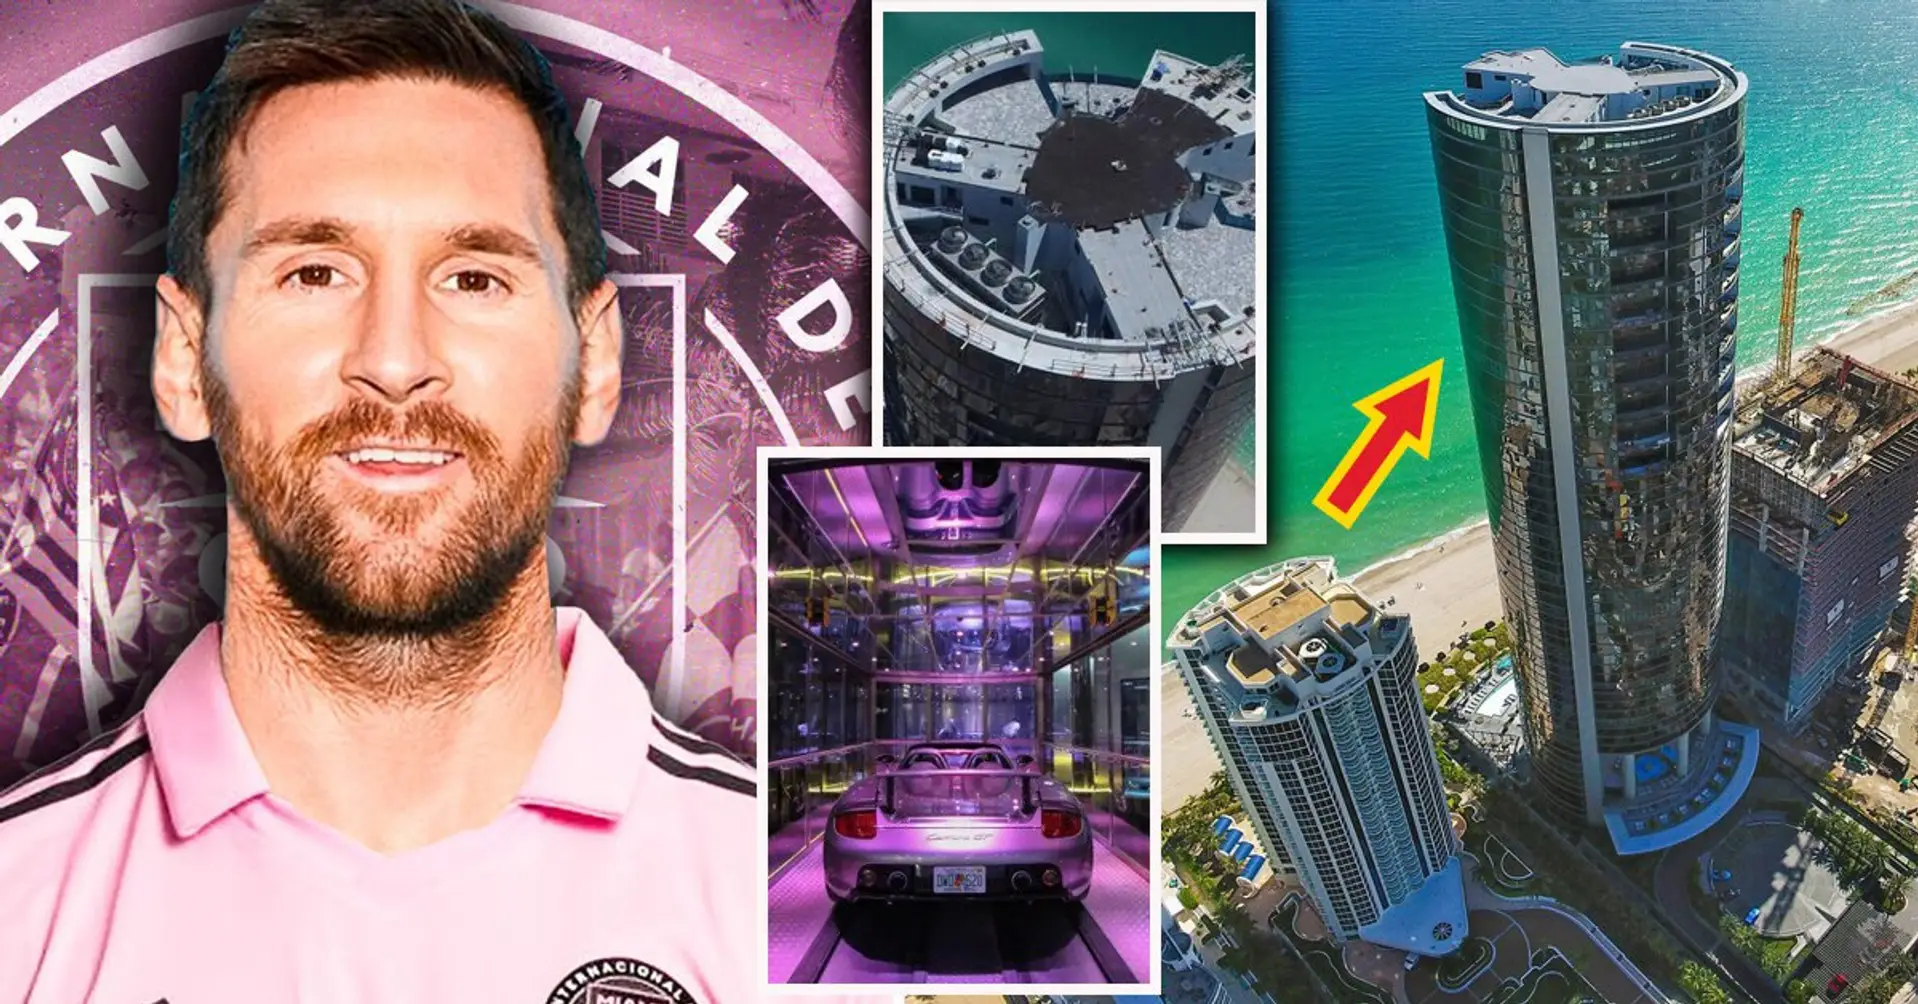 Torre con vista al mar, ascensor privado para coches: una mirada al penthouse de $9 millones de Messi en Miami